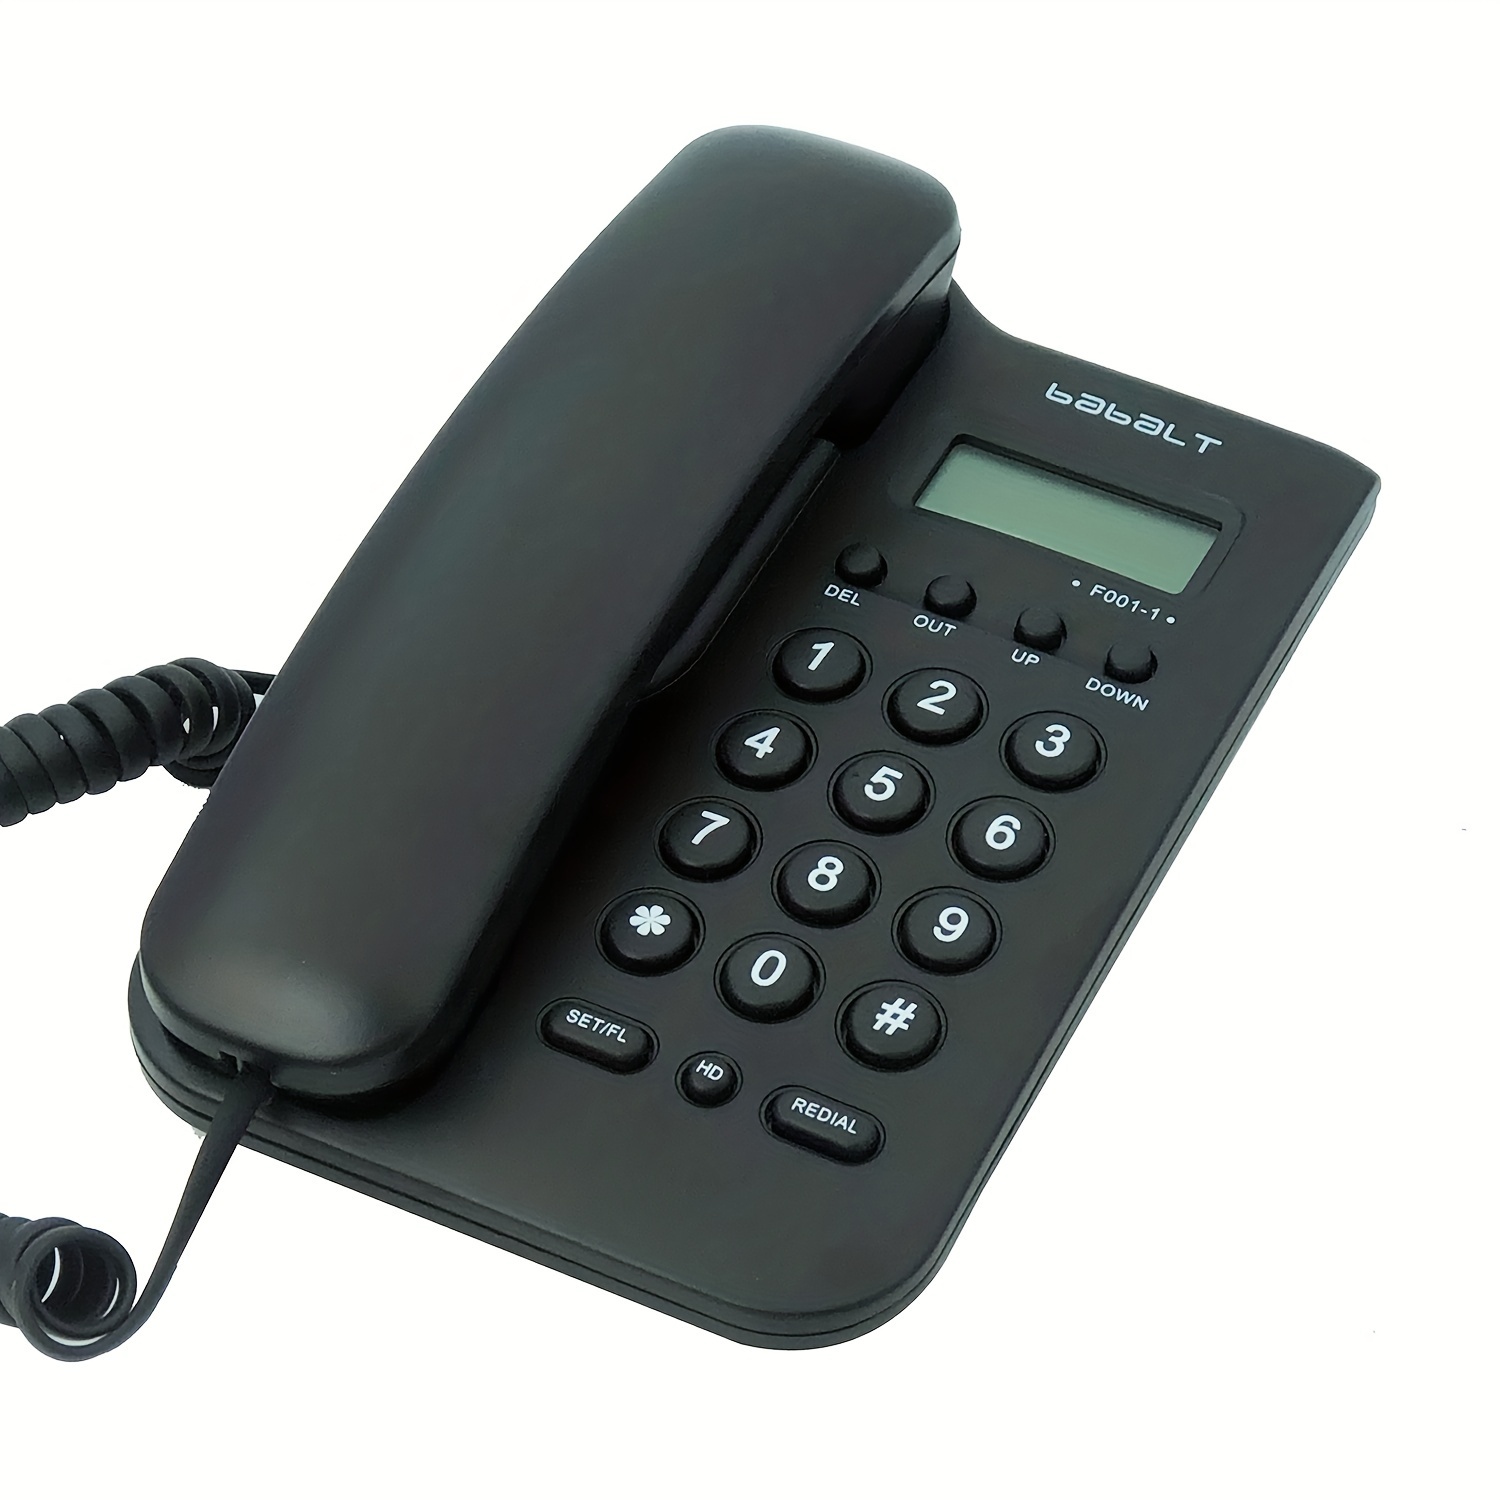 Teléfono Básico De Línea Fija, Identificador De Llamadas Simple FSK/DTMF  Con Pantalla LCD Para Mostrar El Número De Llamada Entrante, Teléfono  Analógi